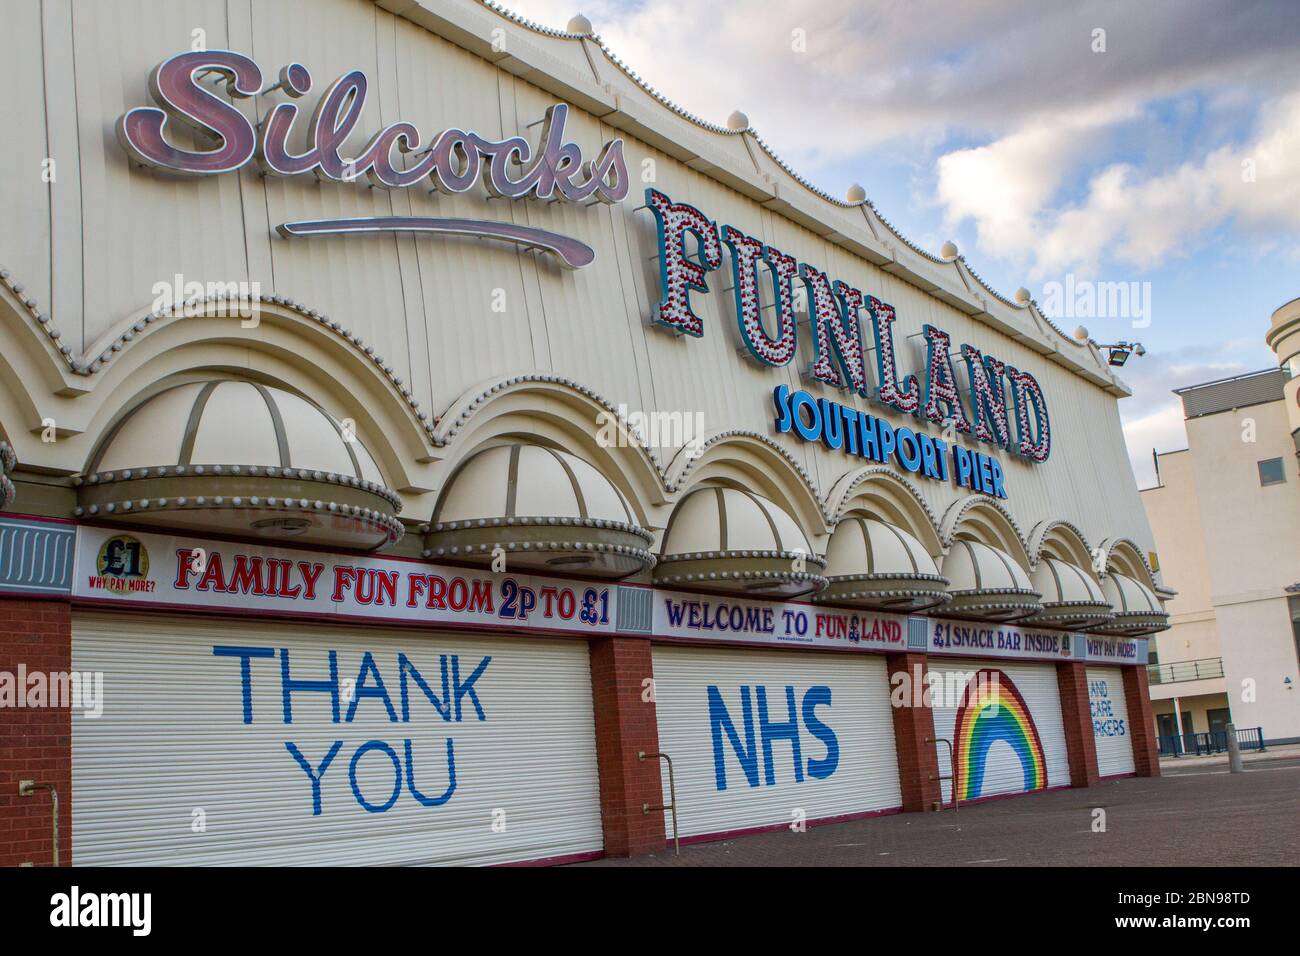 NHS coronavirus pandemia de gripe brote enfermedad muerte desastre crisis covid-19; Rainbow signos de apoyo en Southport, Reino Unido Foto de stock